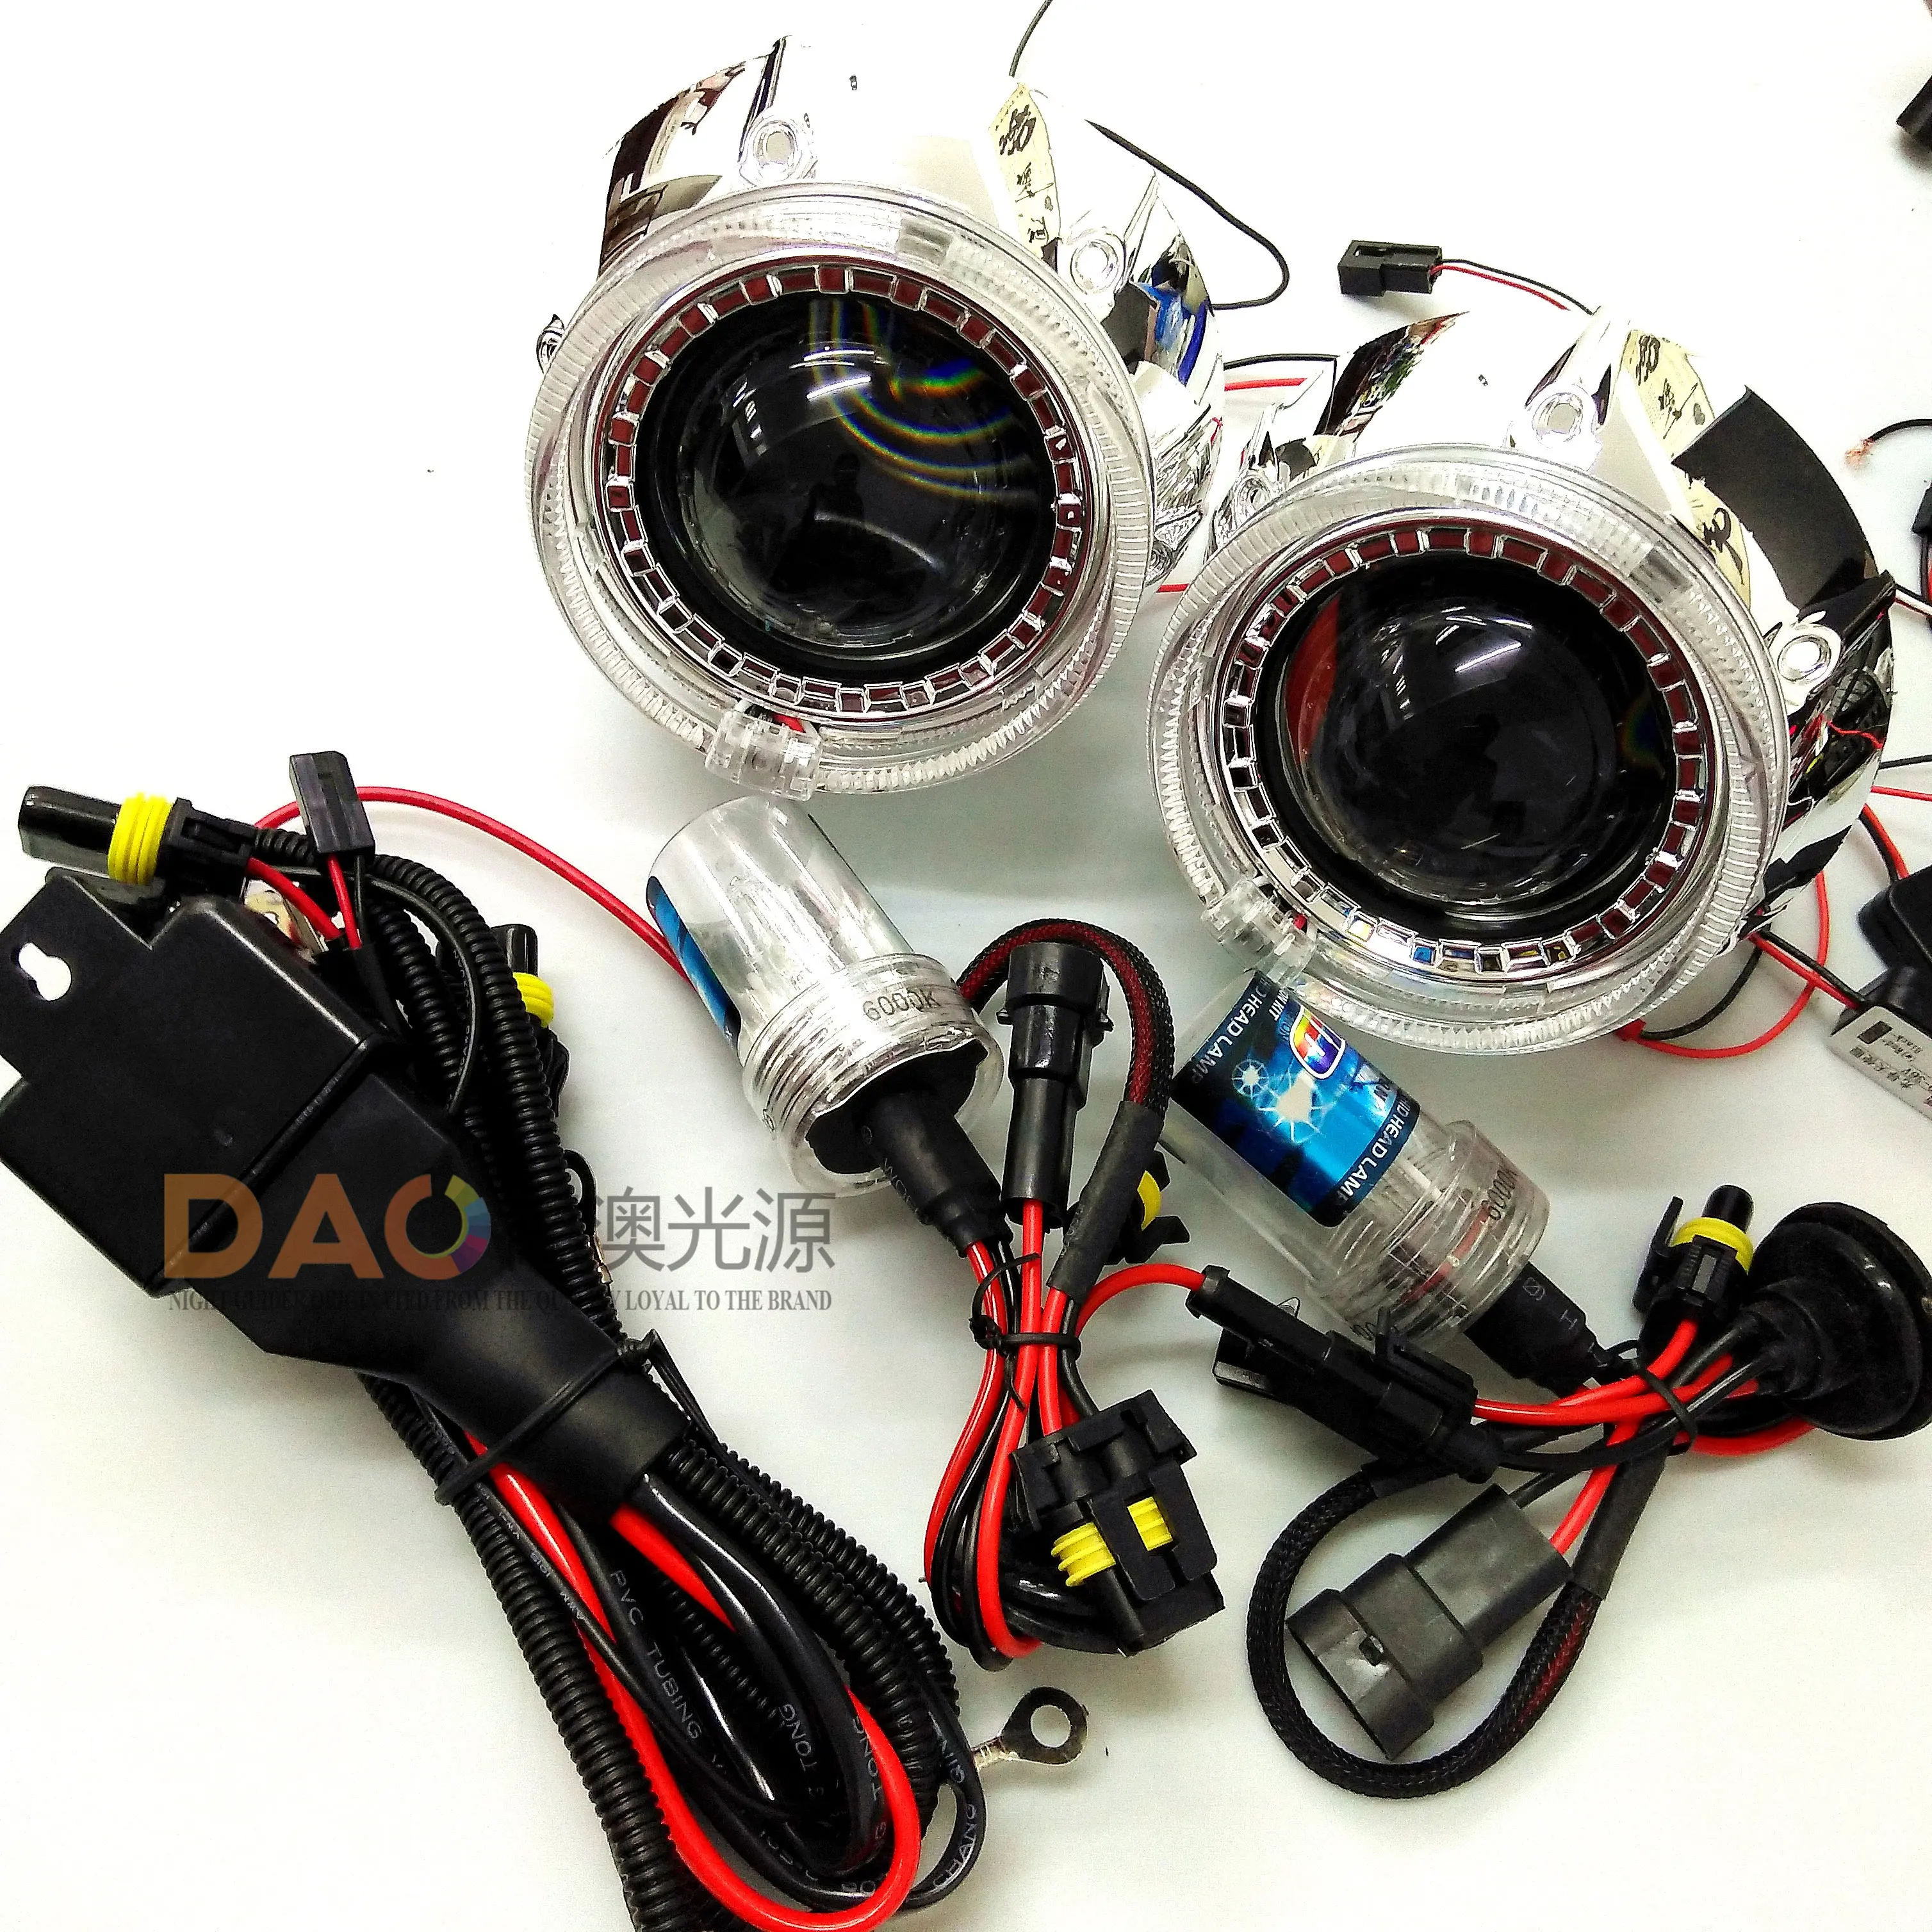 DAO en iyi 3 inç araba bi-xenon evrensel HID projektör Lens kiti LED melek şeytan göz H1 H4 H7 35W HID Xenon araba ışık aksesuarları